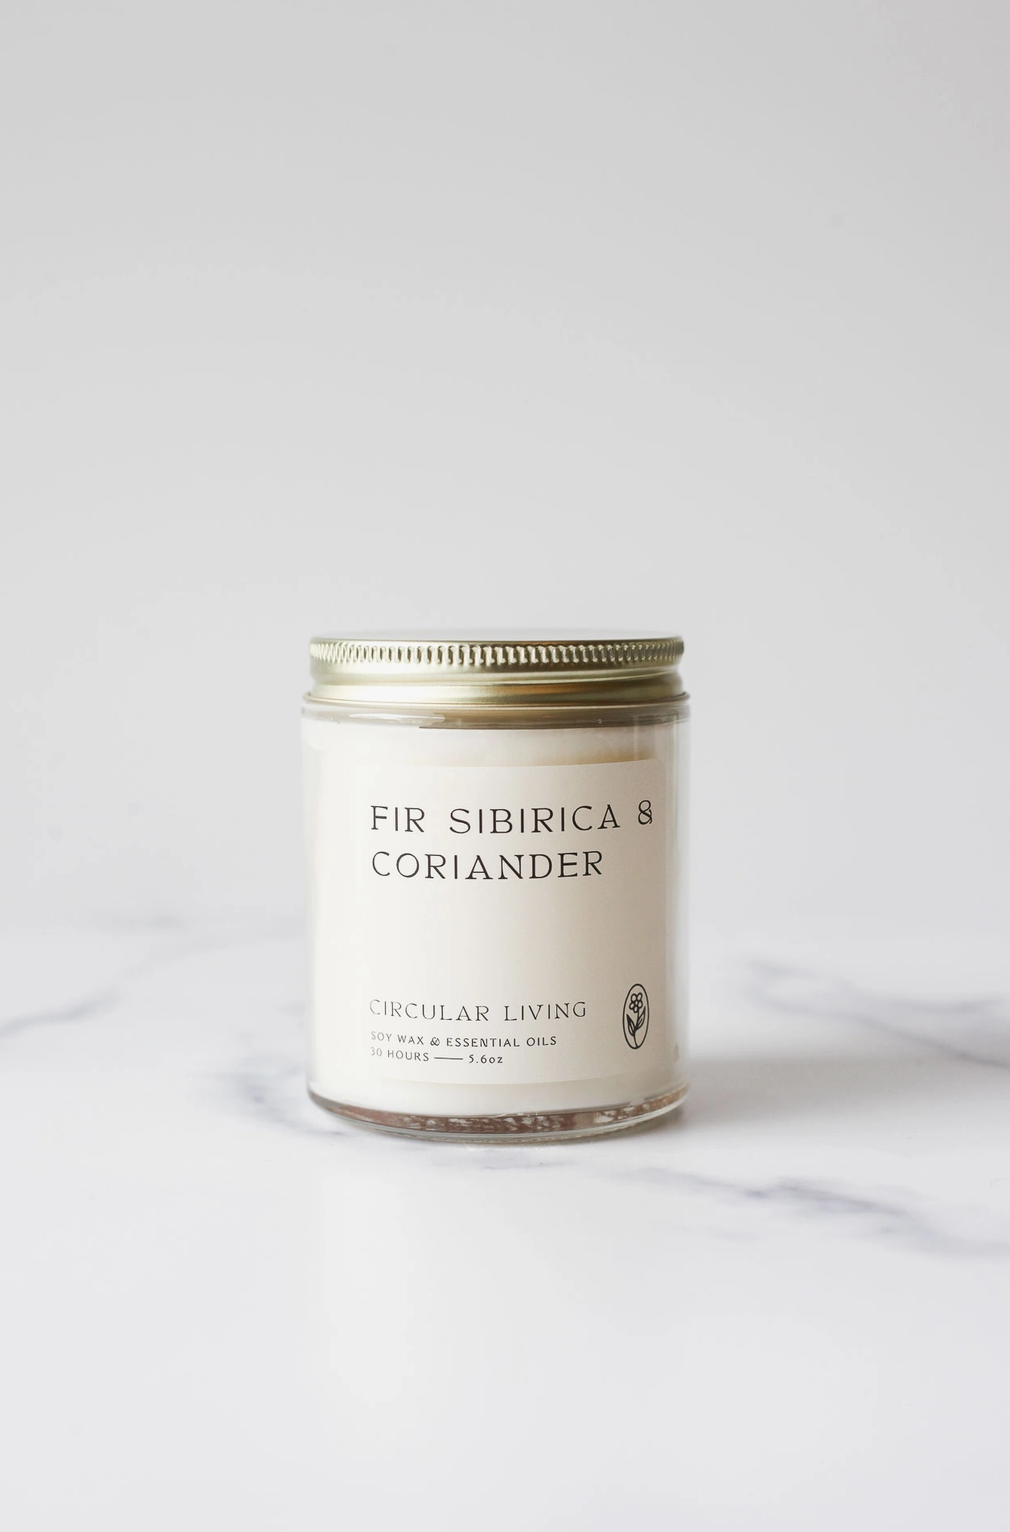 Circular Living Soy Candle - FIR SIBIRICA & CORIANDER